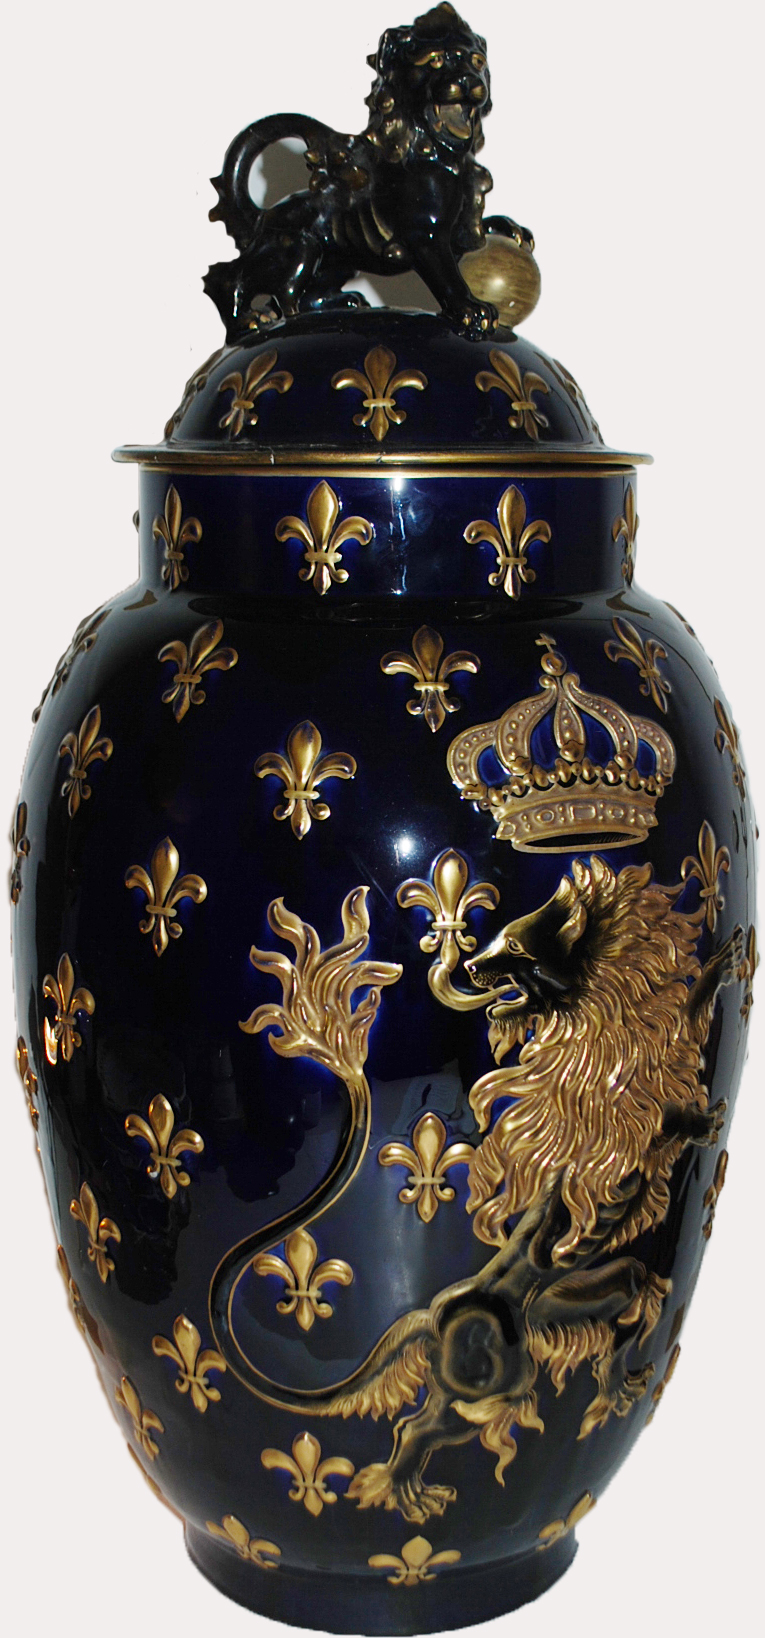 Très important vase couvert en porcelaine à fond gros bleu, le couvercle surmonté d'un chien de Fô, la panse ornée d'un lion couronné, le fond à décor de fleurs de lys. (Accidents). Fin du XIXe siècle.